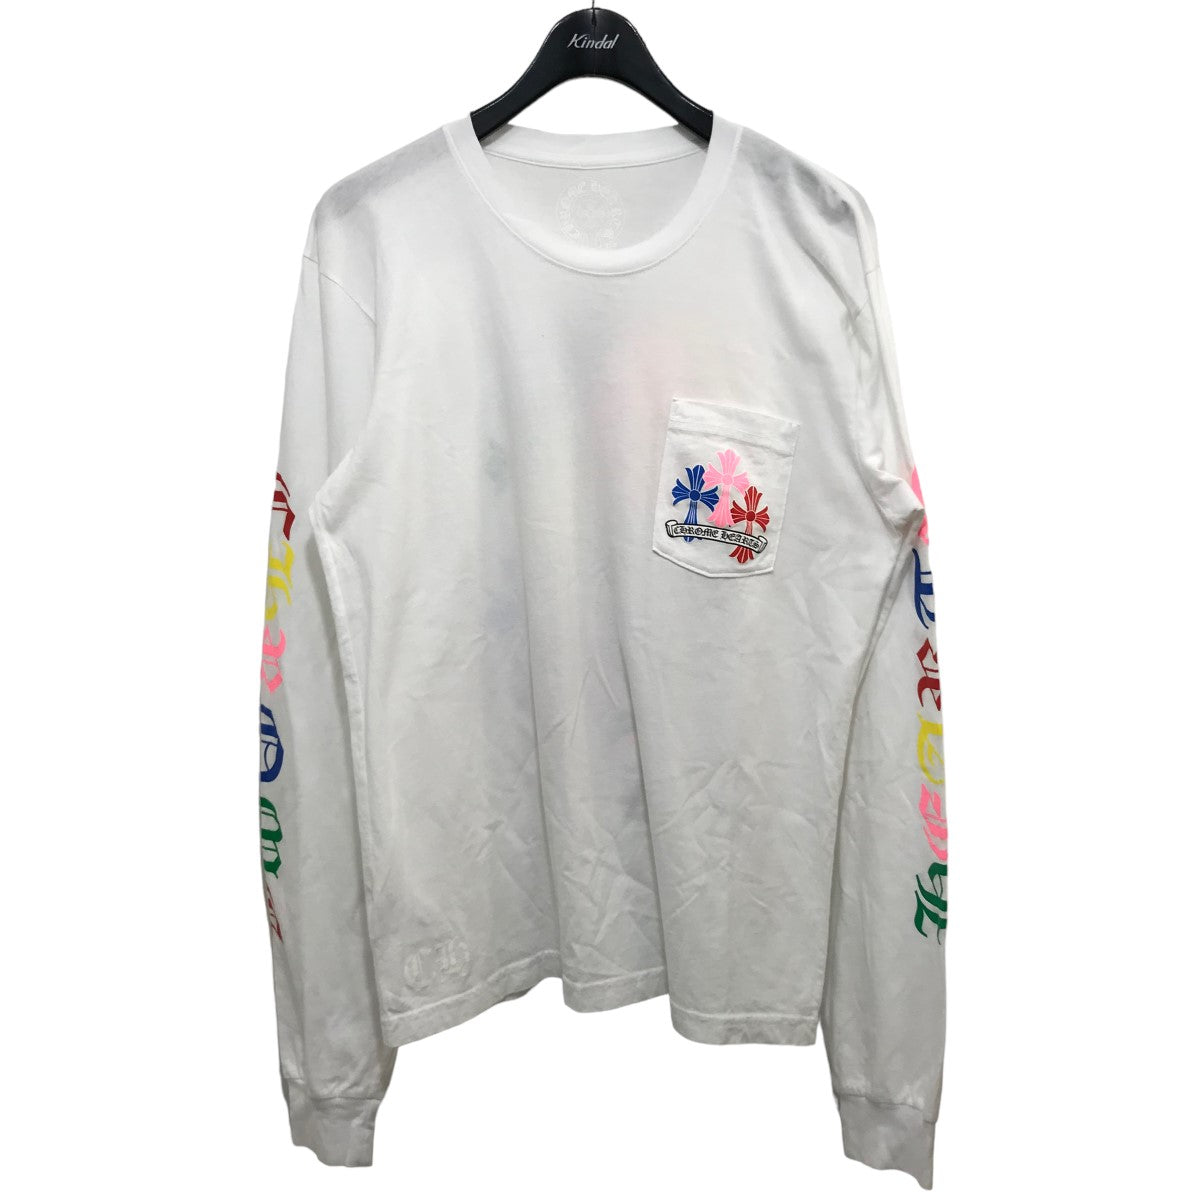 32,400円CHROME HEARTS L/S Tee 長袖Tシャツ ロンT ホワイト